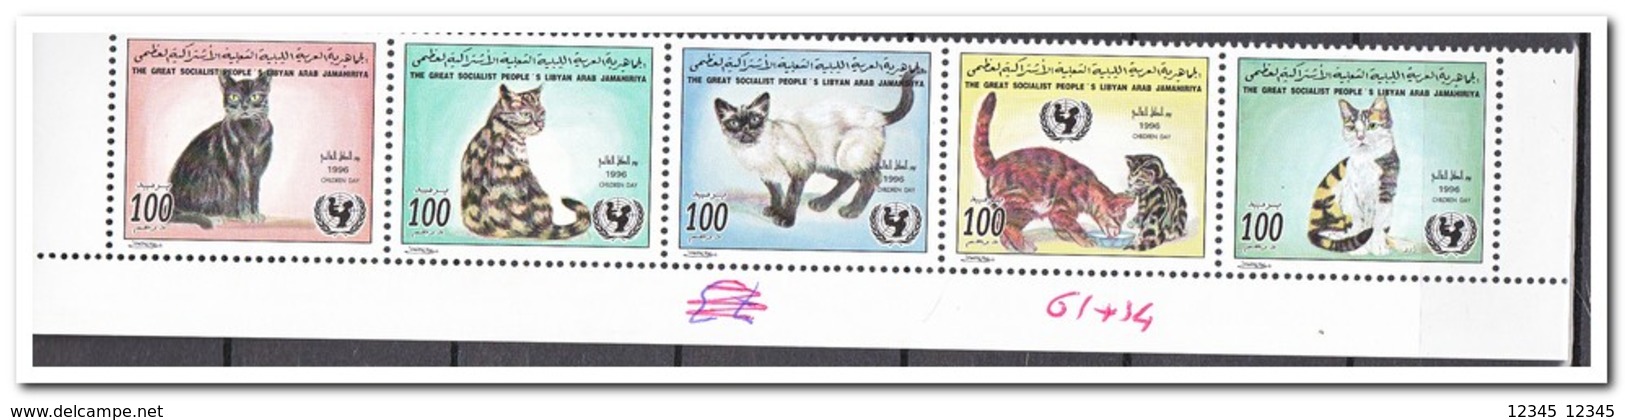 Libië 1996, Postfris MNH, Cats - Libyen